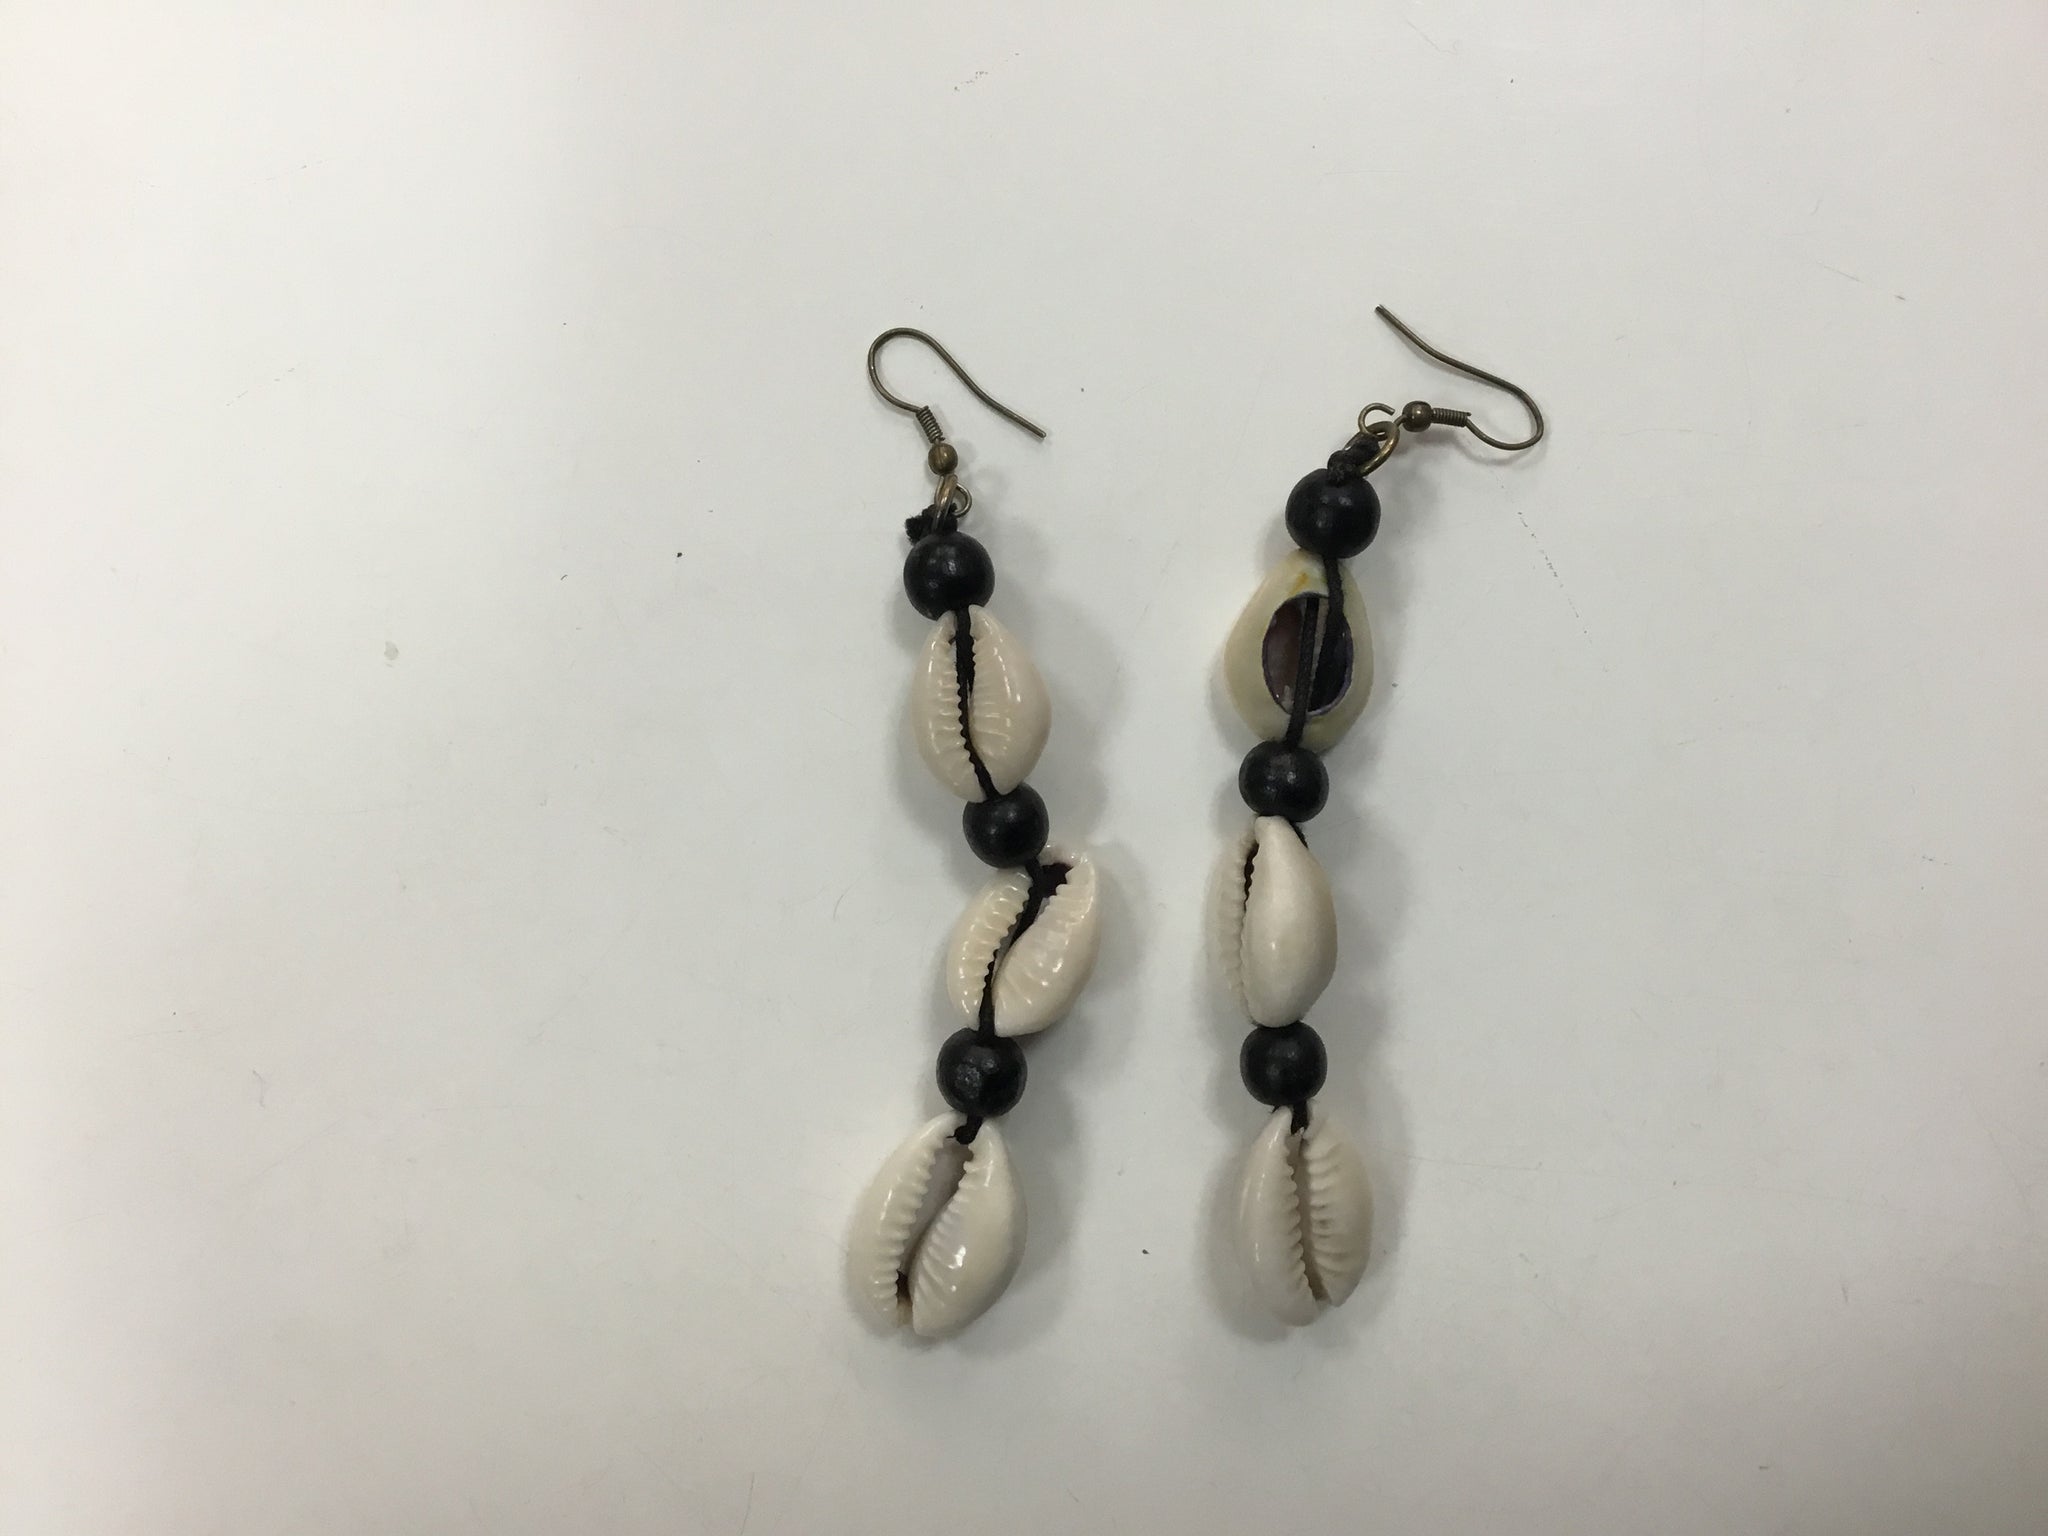 2 cowrie shells earrings